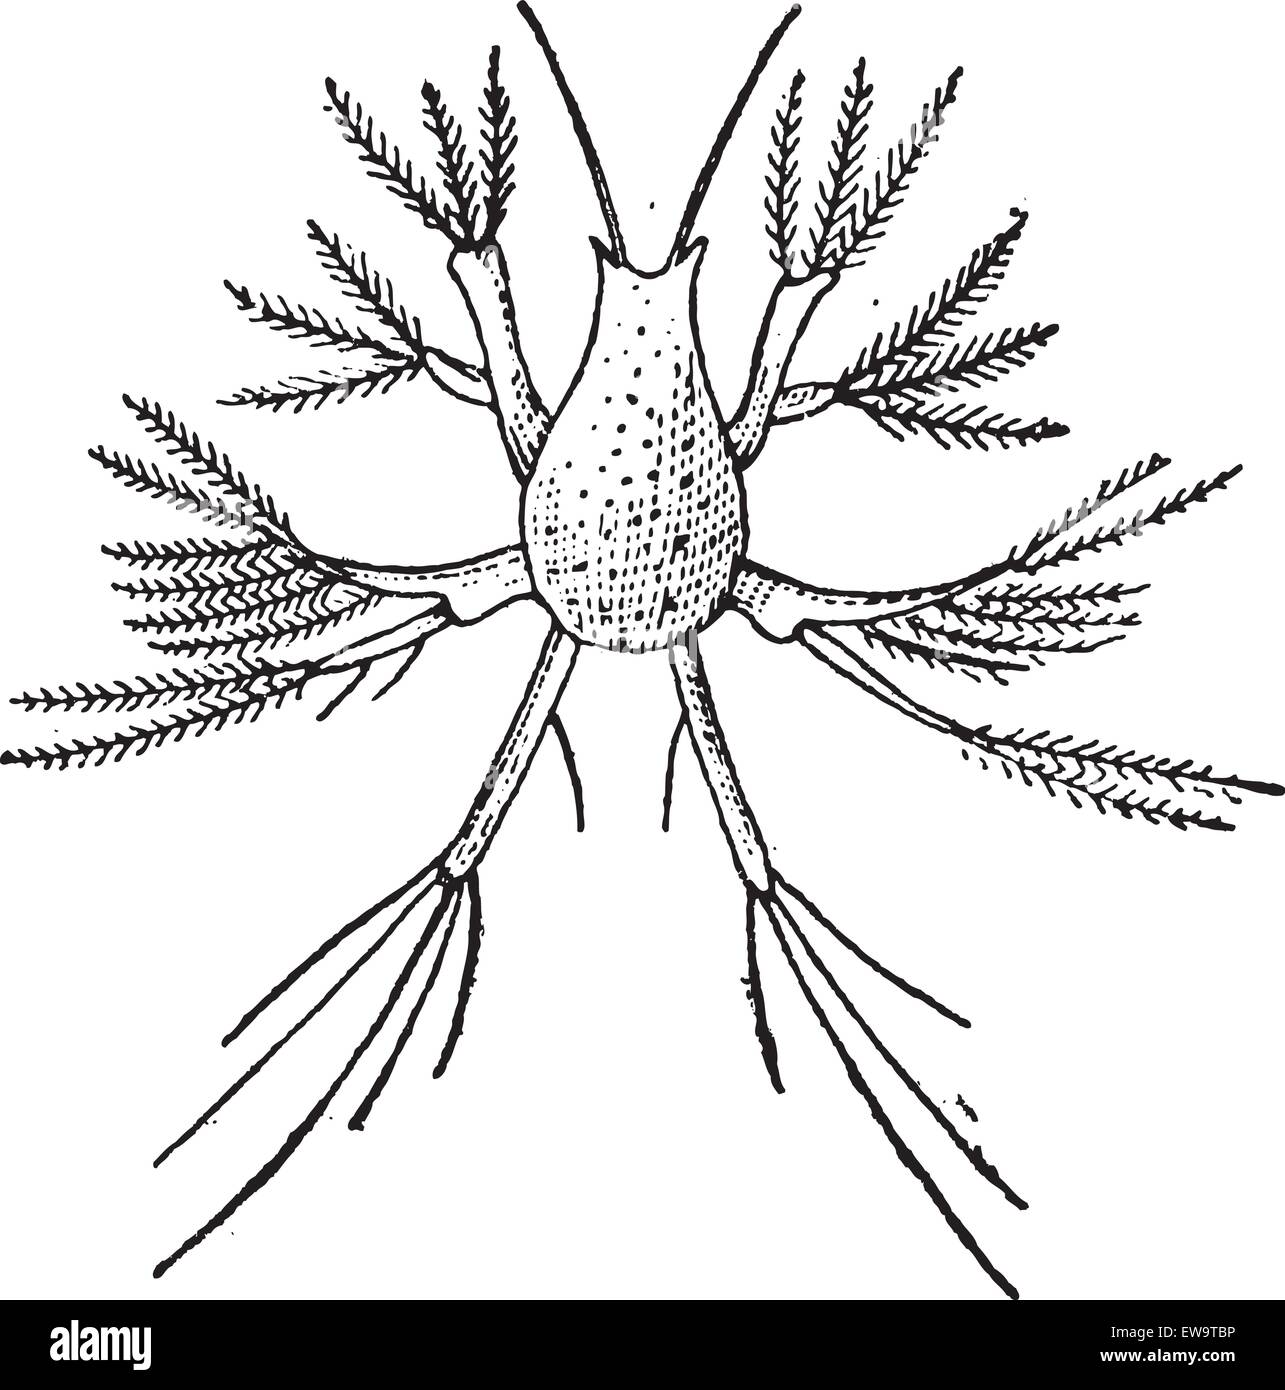 Copepoden oder Copepoda, graviert Vintage Illustration. Wörterbuch der Worte und Dinge - Larive und Fleury - 1895 Stock Vektor